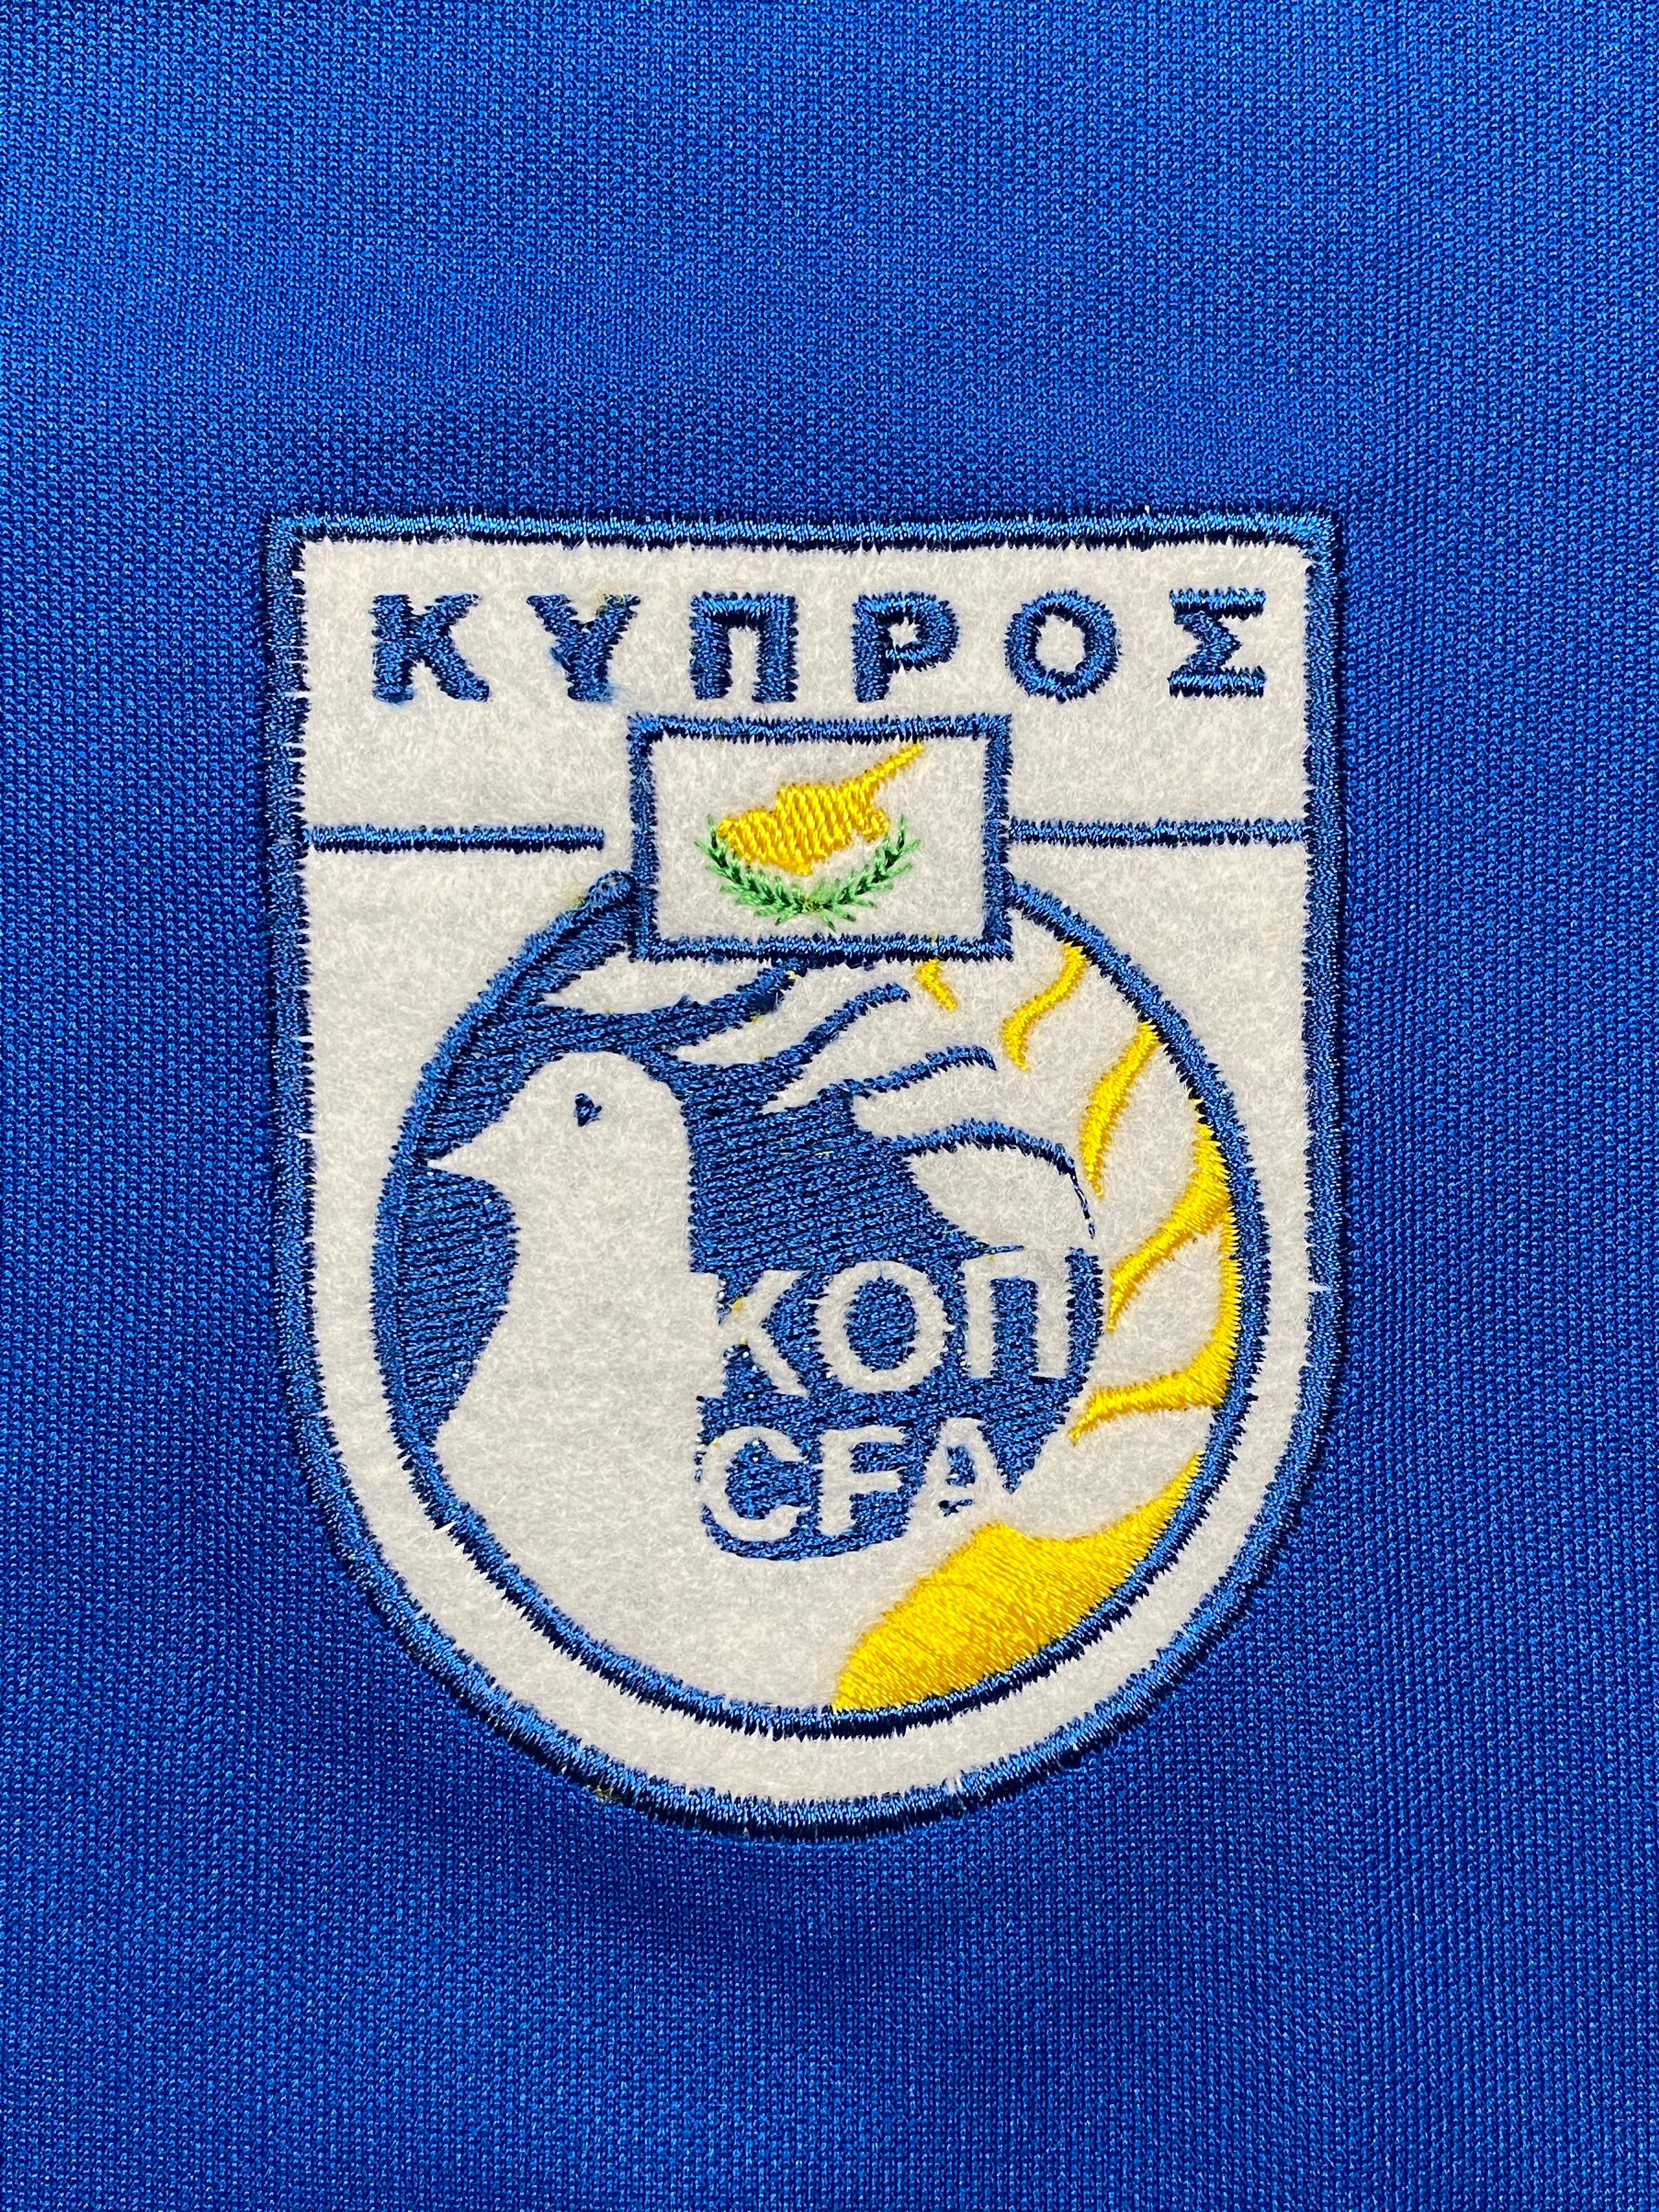 2003/04 Cyprus Home Shirt (XL) 9/10